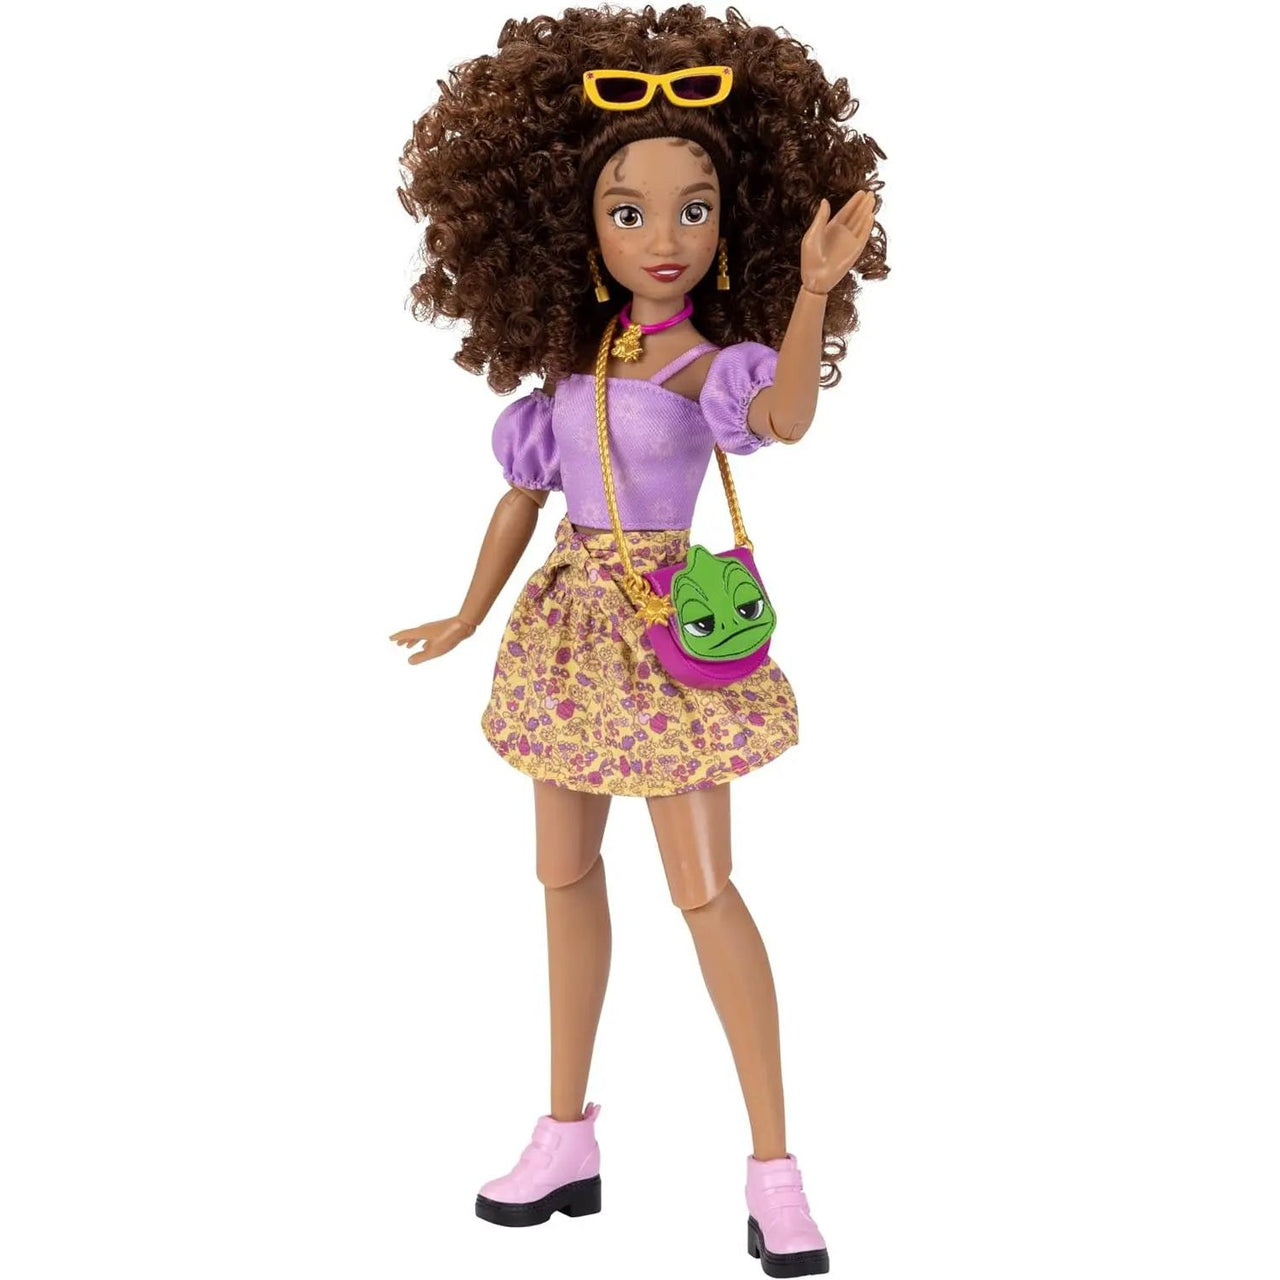 Disney ily 4ever Rapunzel Fashion Doll Disney